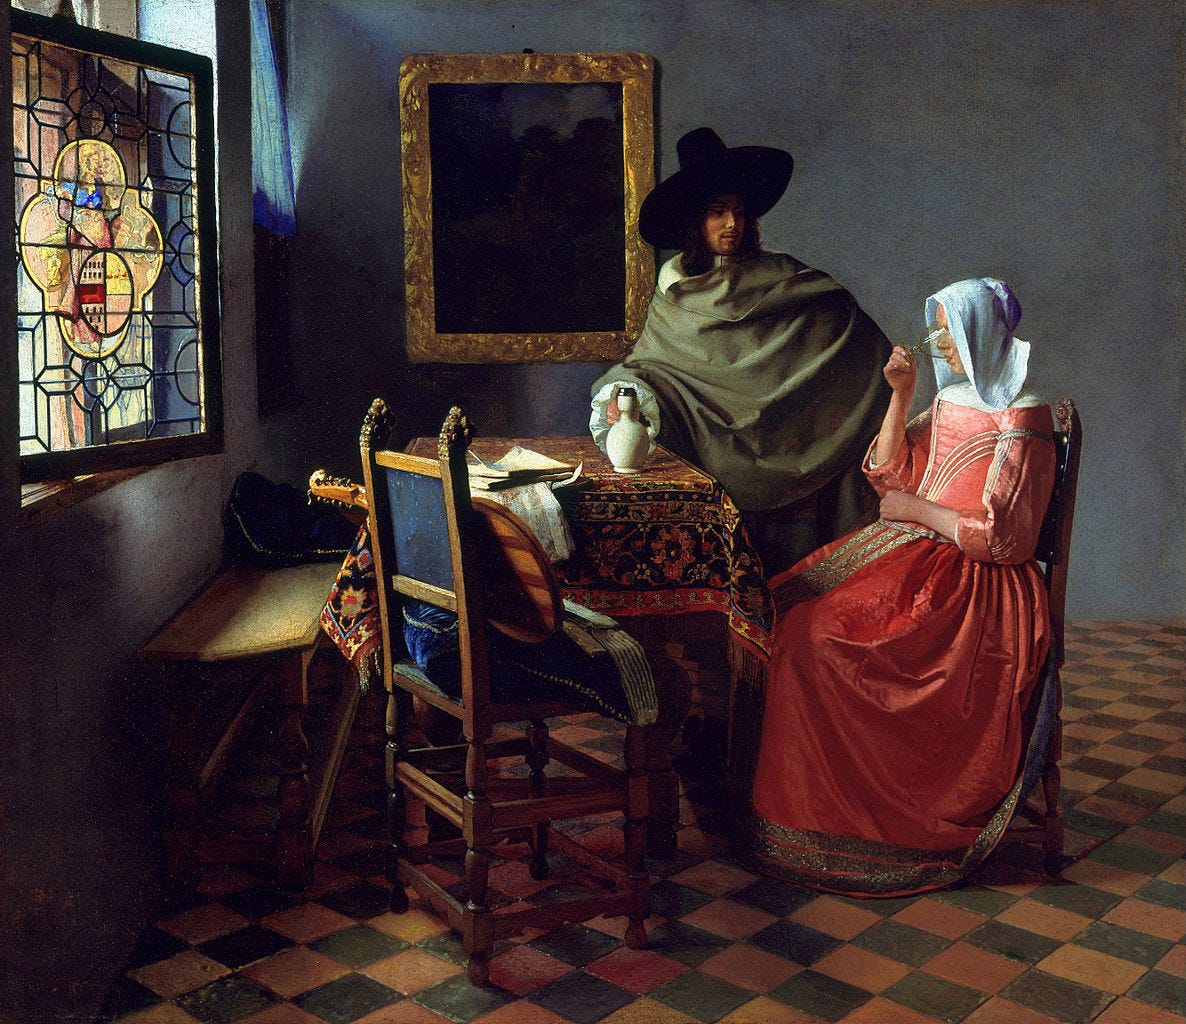 Jan Vermeer van Delft - The Glass of Wine between 1658 and 1660 